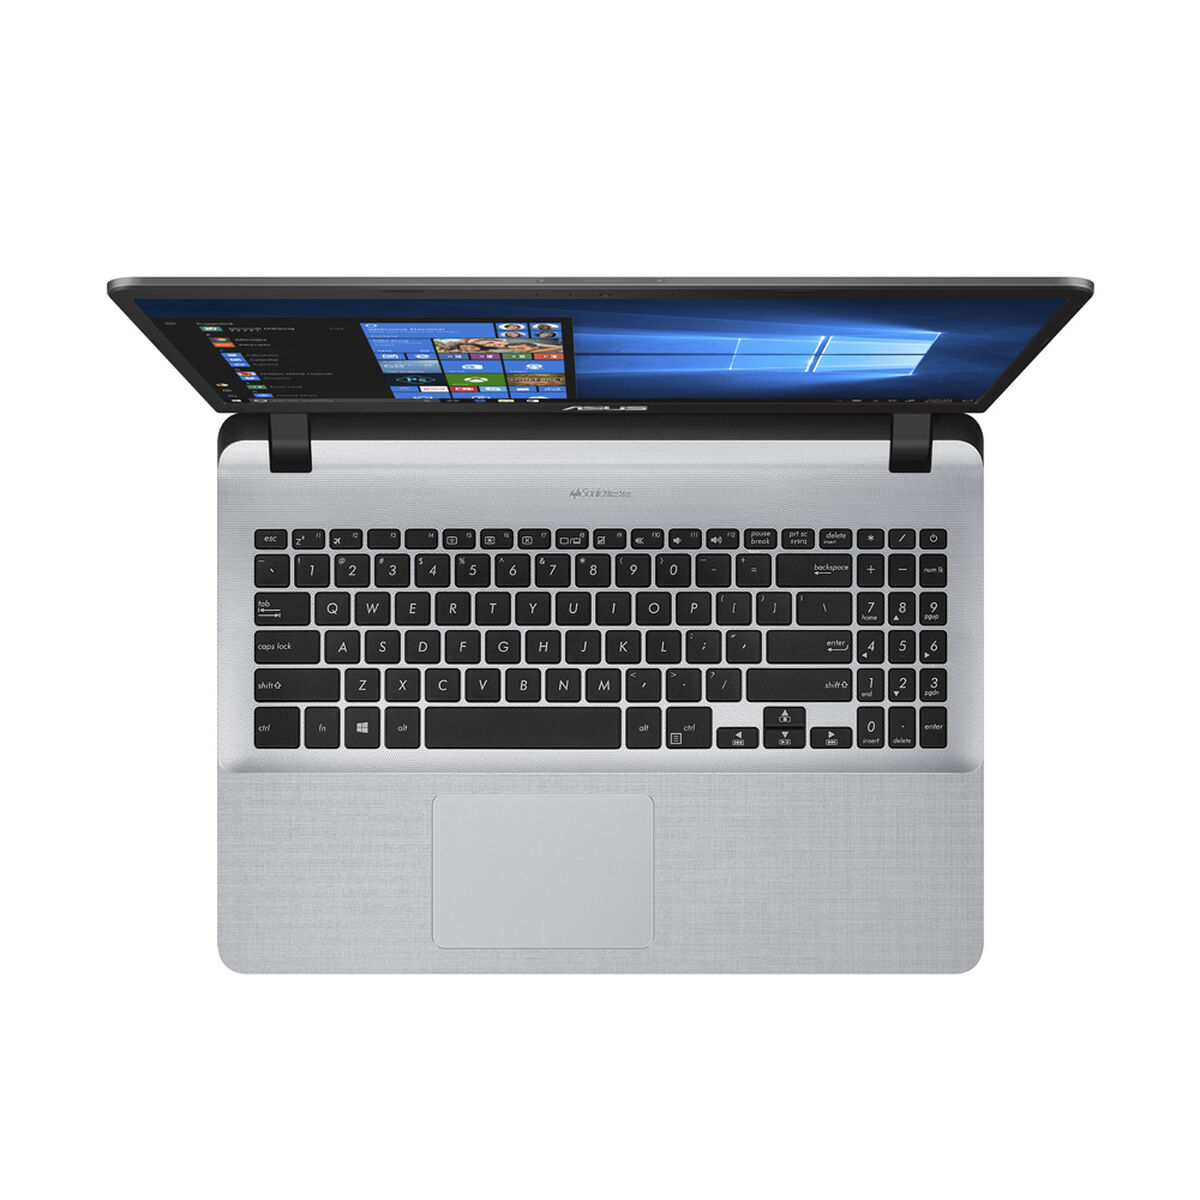 Notebook Asus X507UB-BQ007T Core i5 8GB 1TB 15,6" NVIDIA MX110